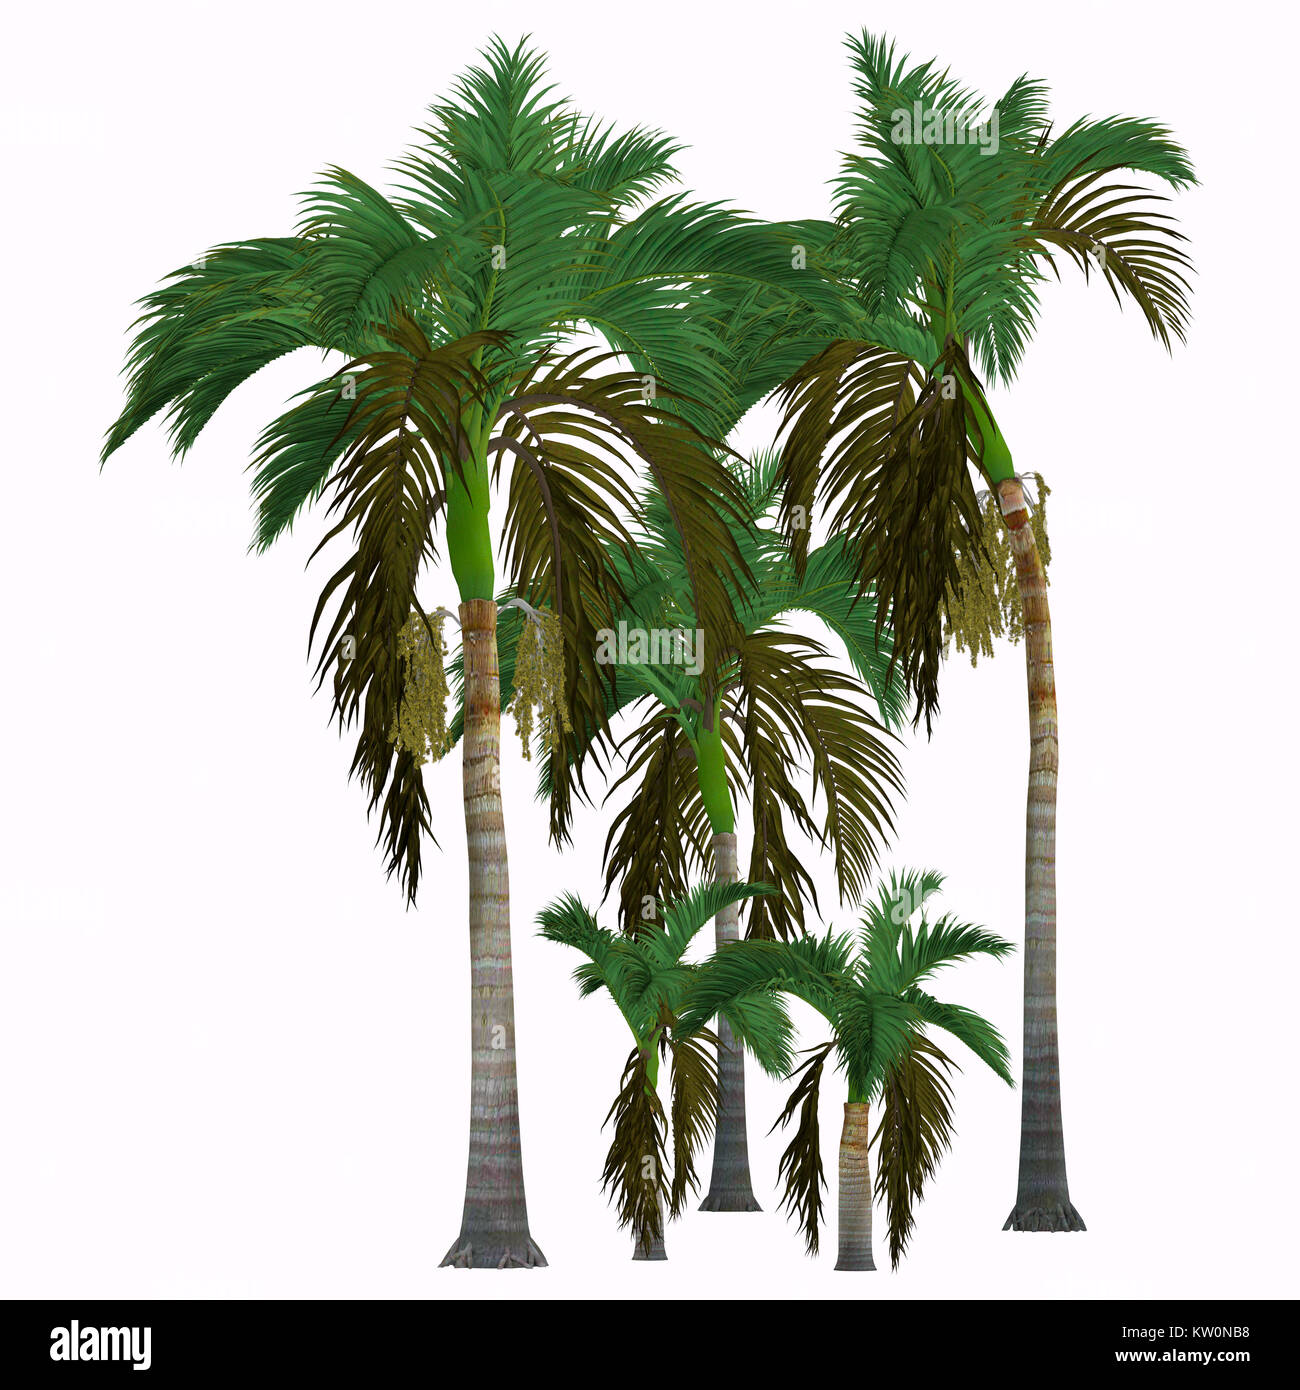 Alexander King palmeras tropicales - Este árbol crece en la selva y es una palma nativa de Queensland, Australia. Foto de stock